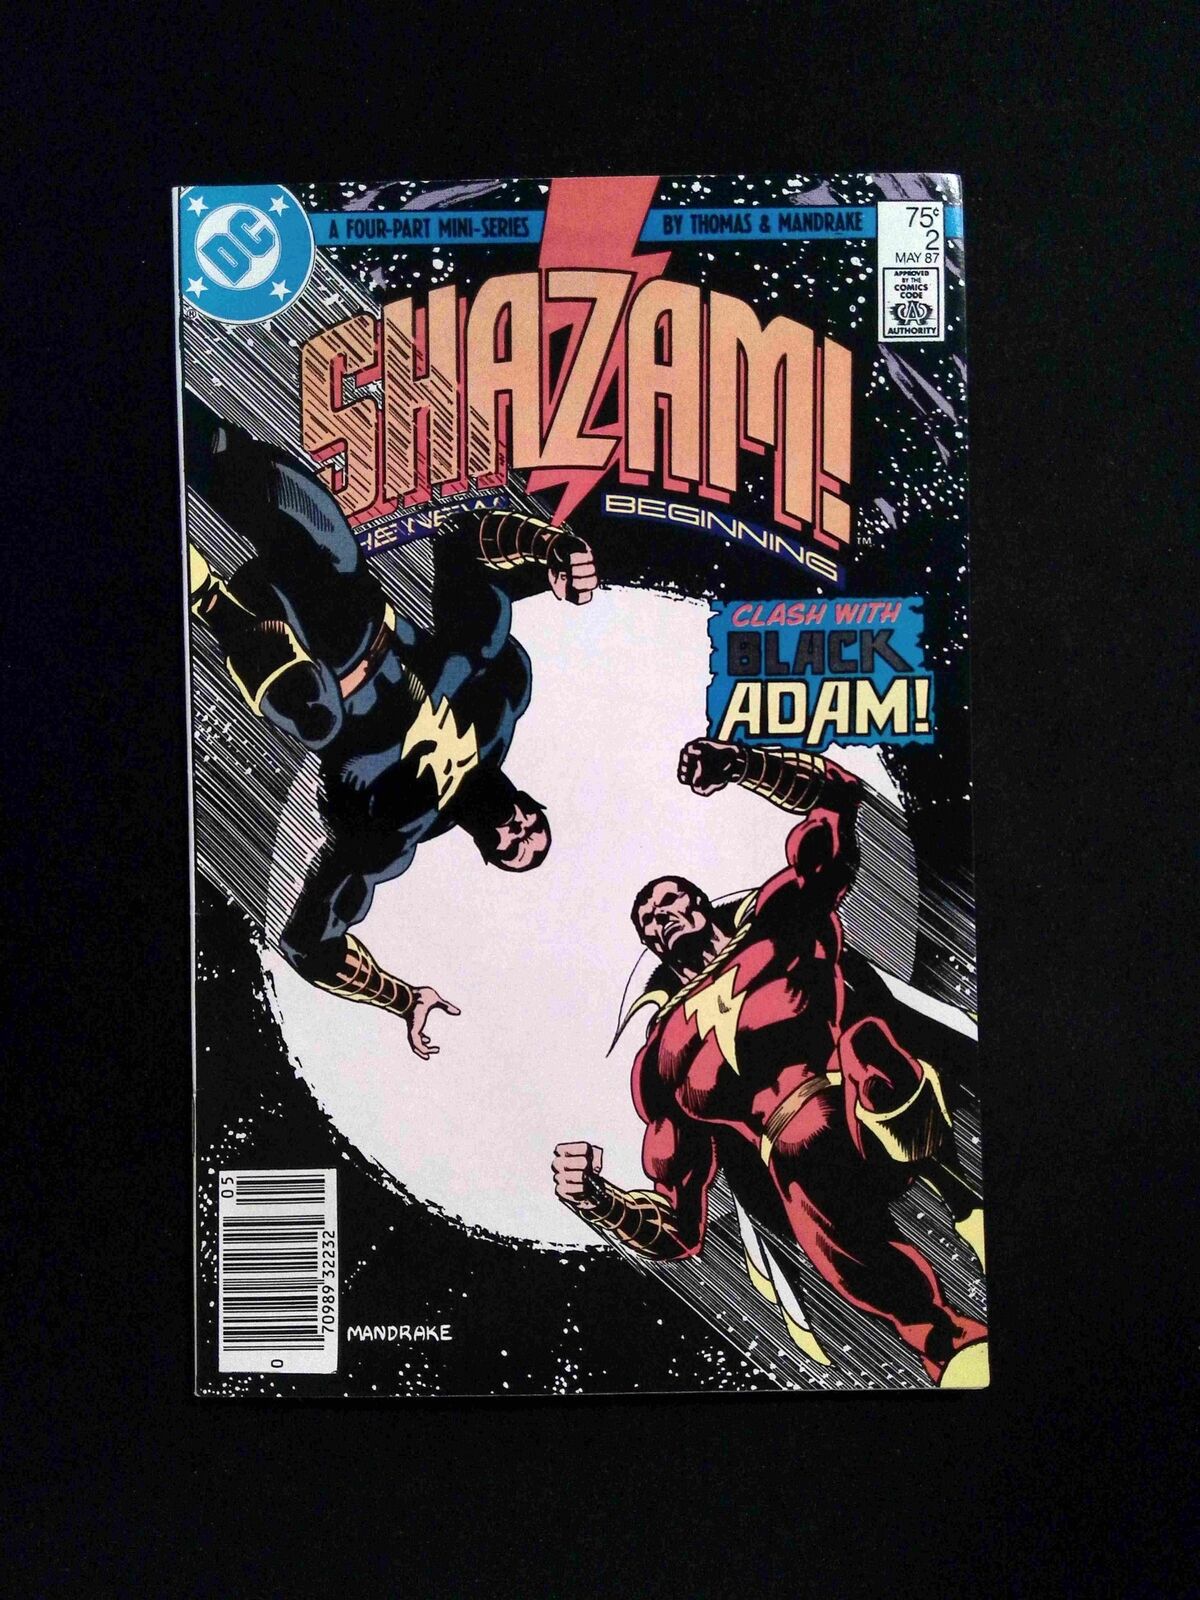 Shazam The New Beginning #2  DC Comics 1987 VF+ Newsstand